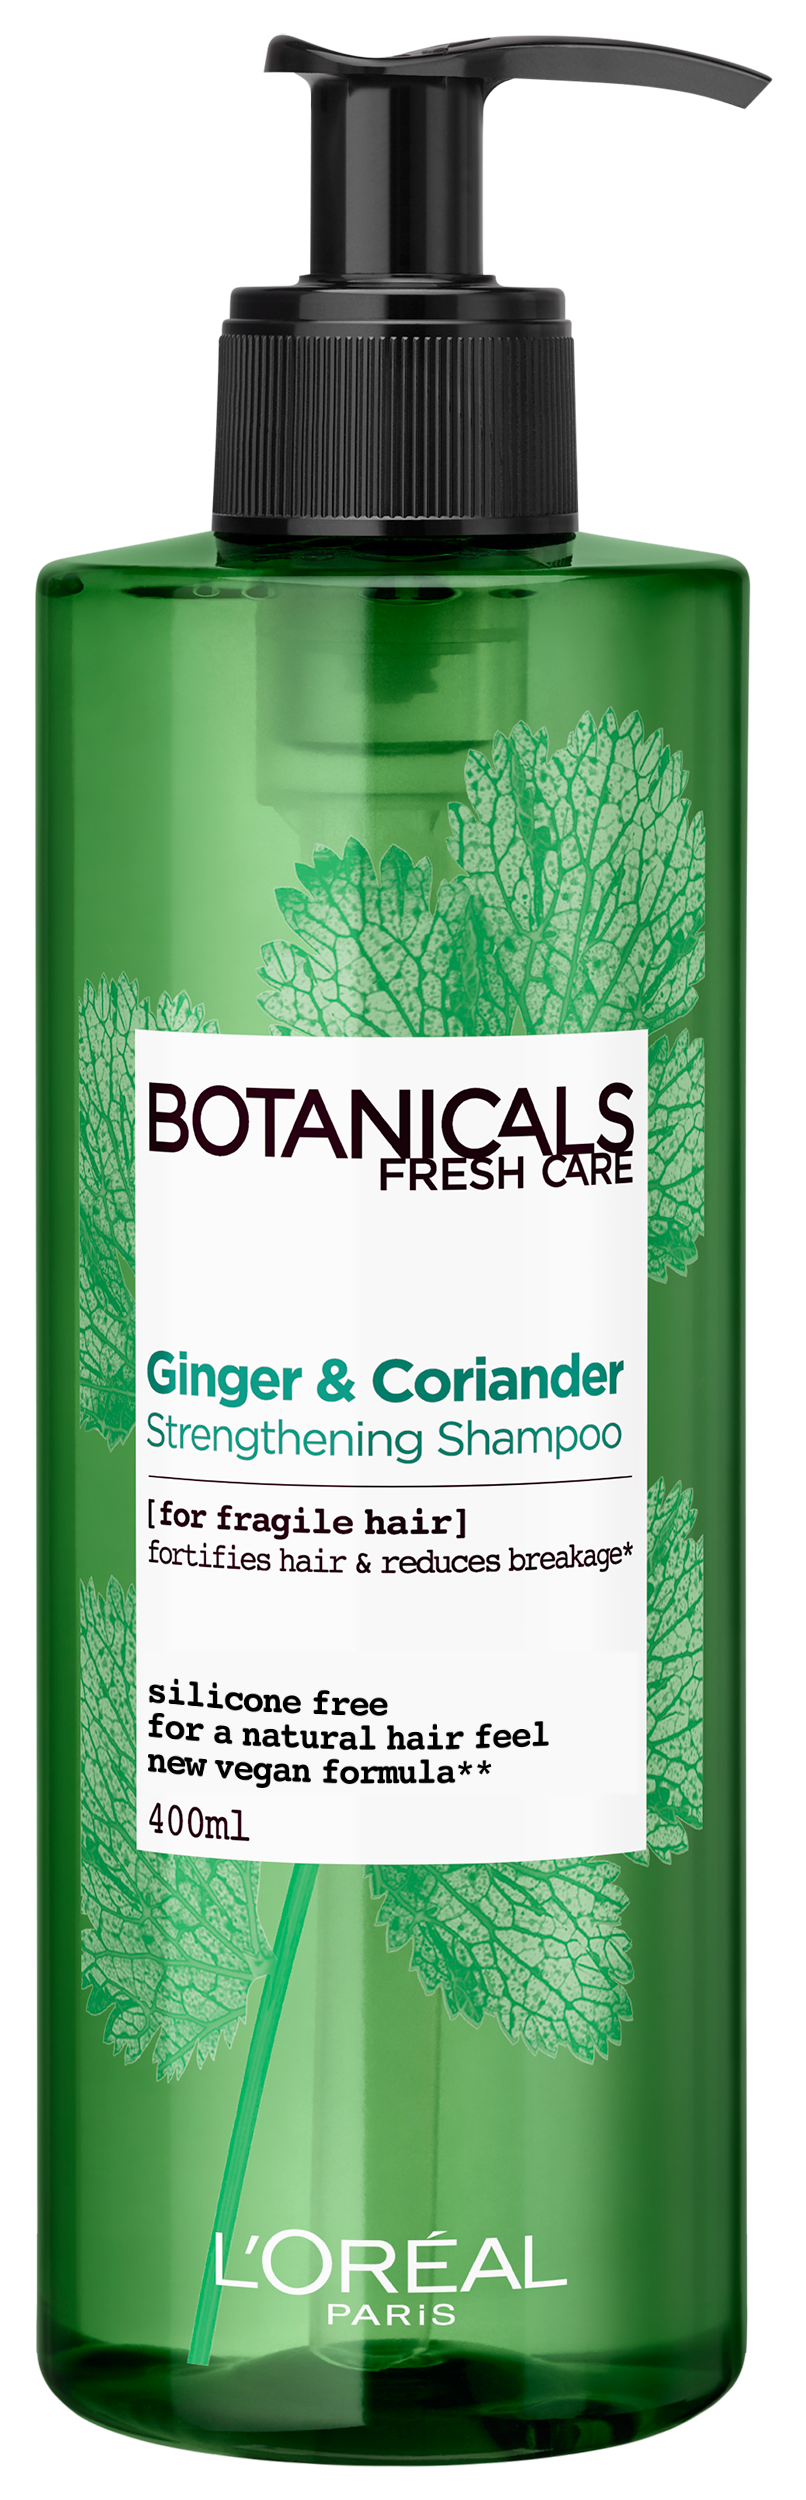 loreal botanicals fresh care odżywka do włosów kolendra